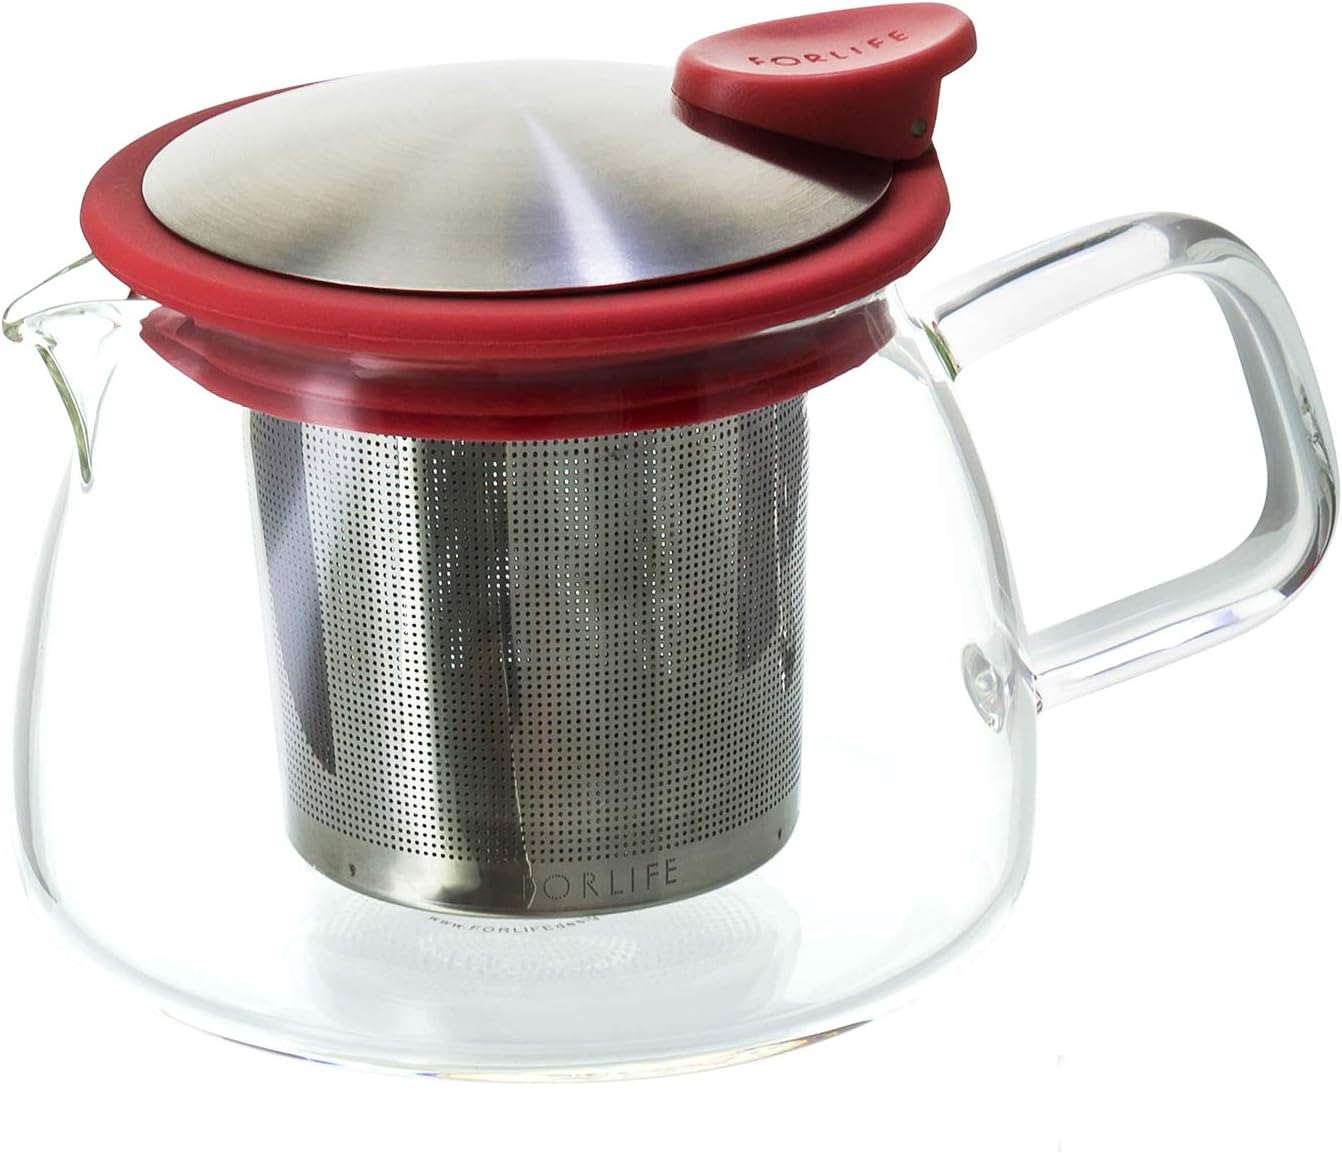 430ml Forlife Bell Glass Teapot - RED